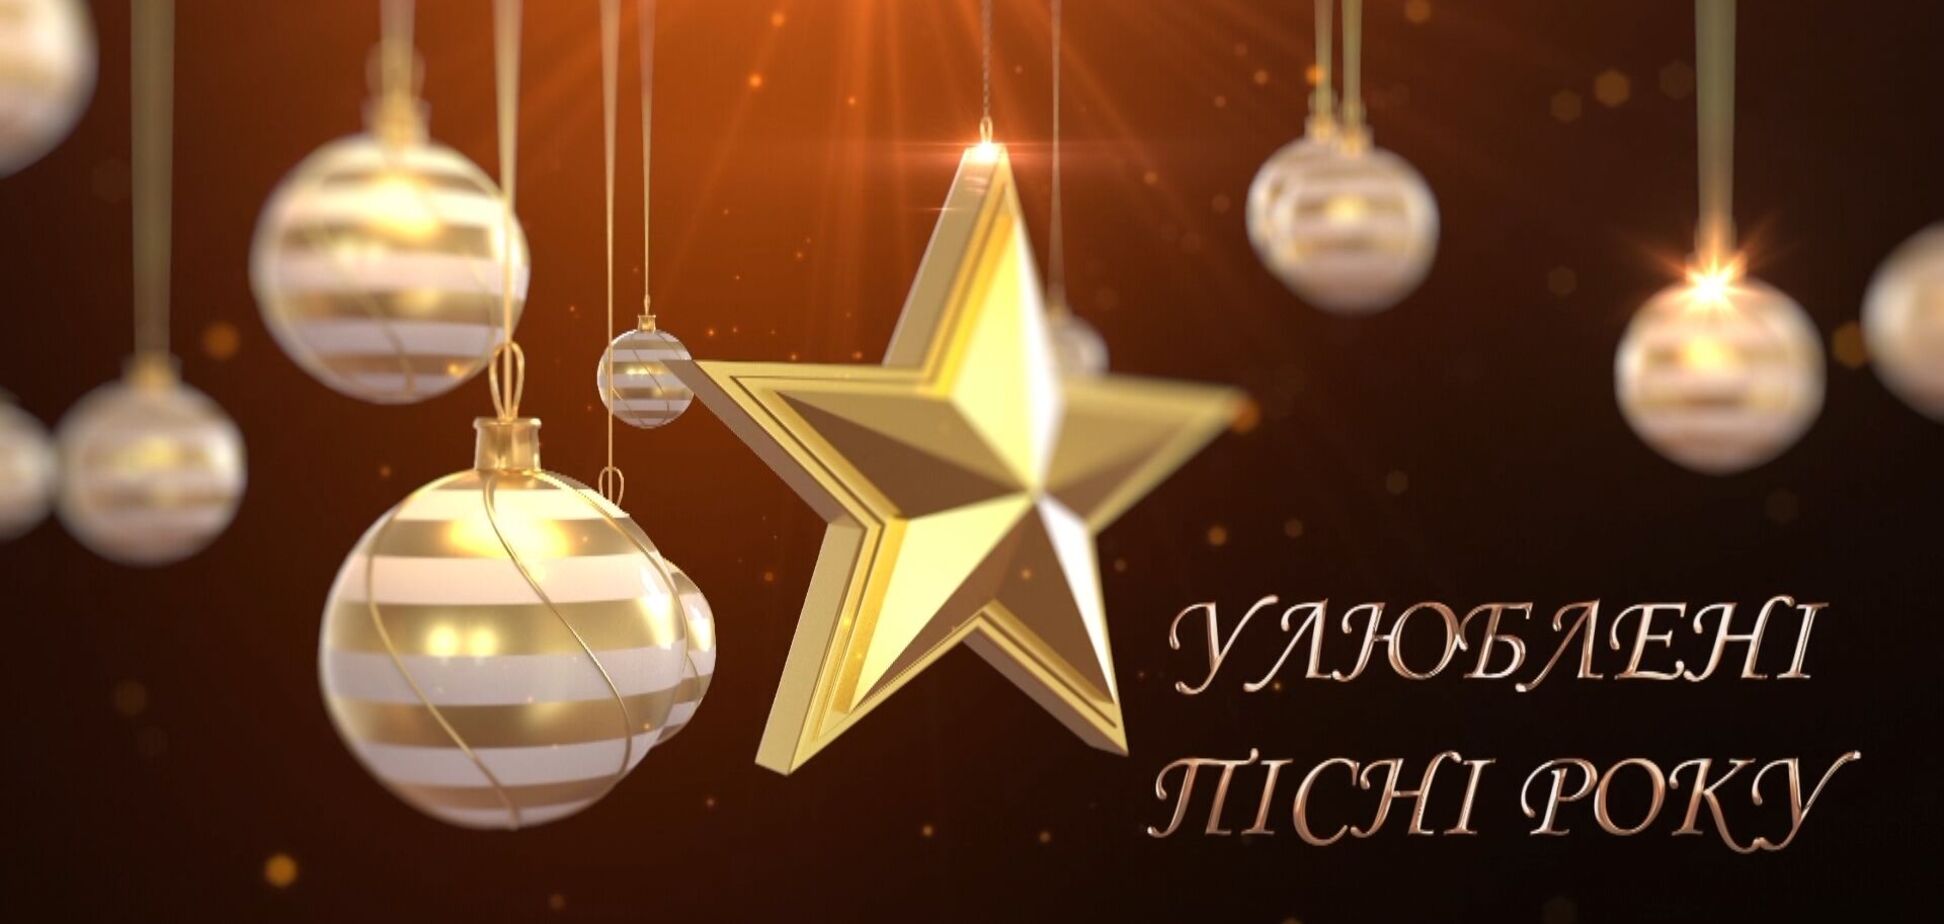 Праздничный концерт 'Любимые песни года' собрал ярких звезд украинской эстрады, чтобы подарить прекрасное настроение в новогодние праздники!